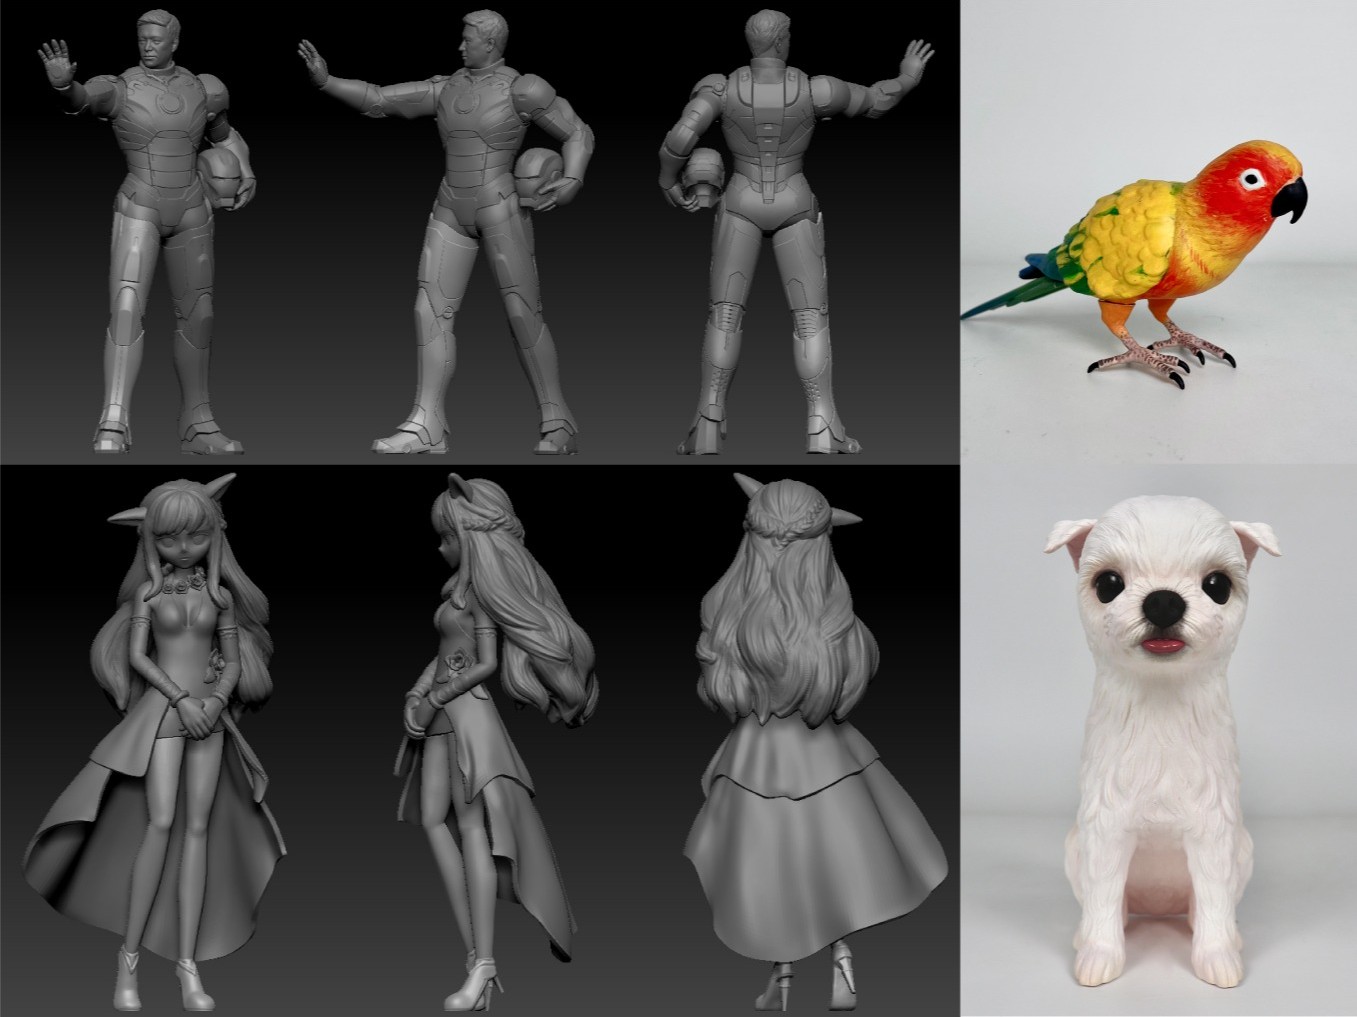 3D모델링 인물 동물 크리쳐 애니 게임 캐릭터 모델링해 드립니다.